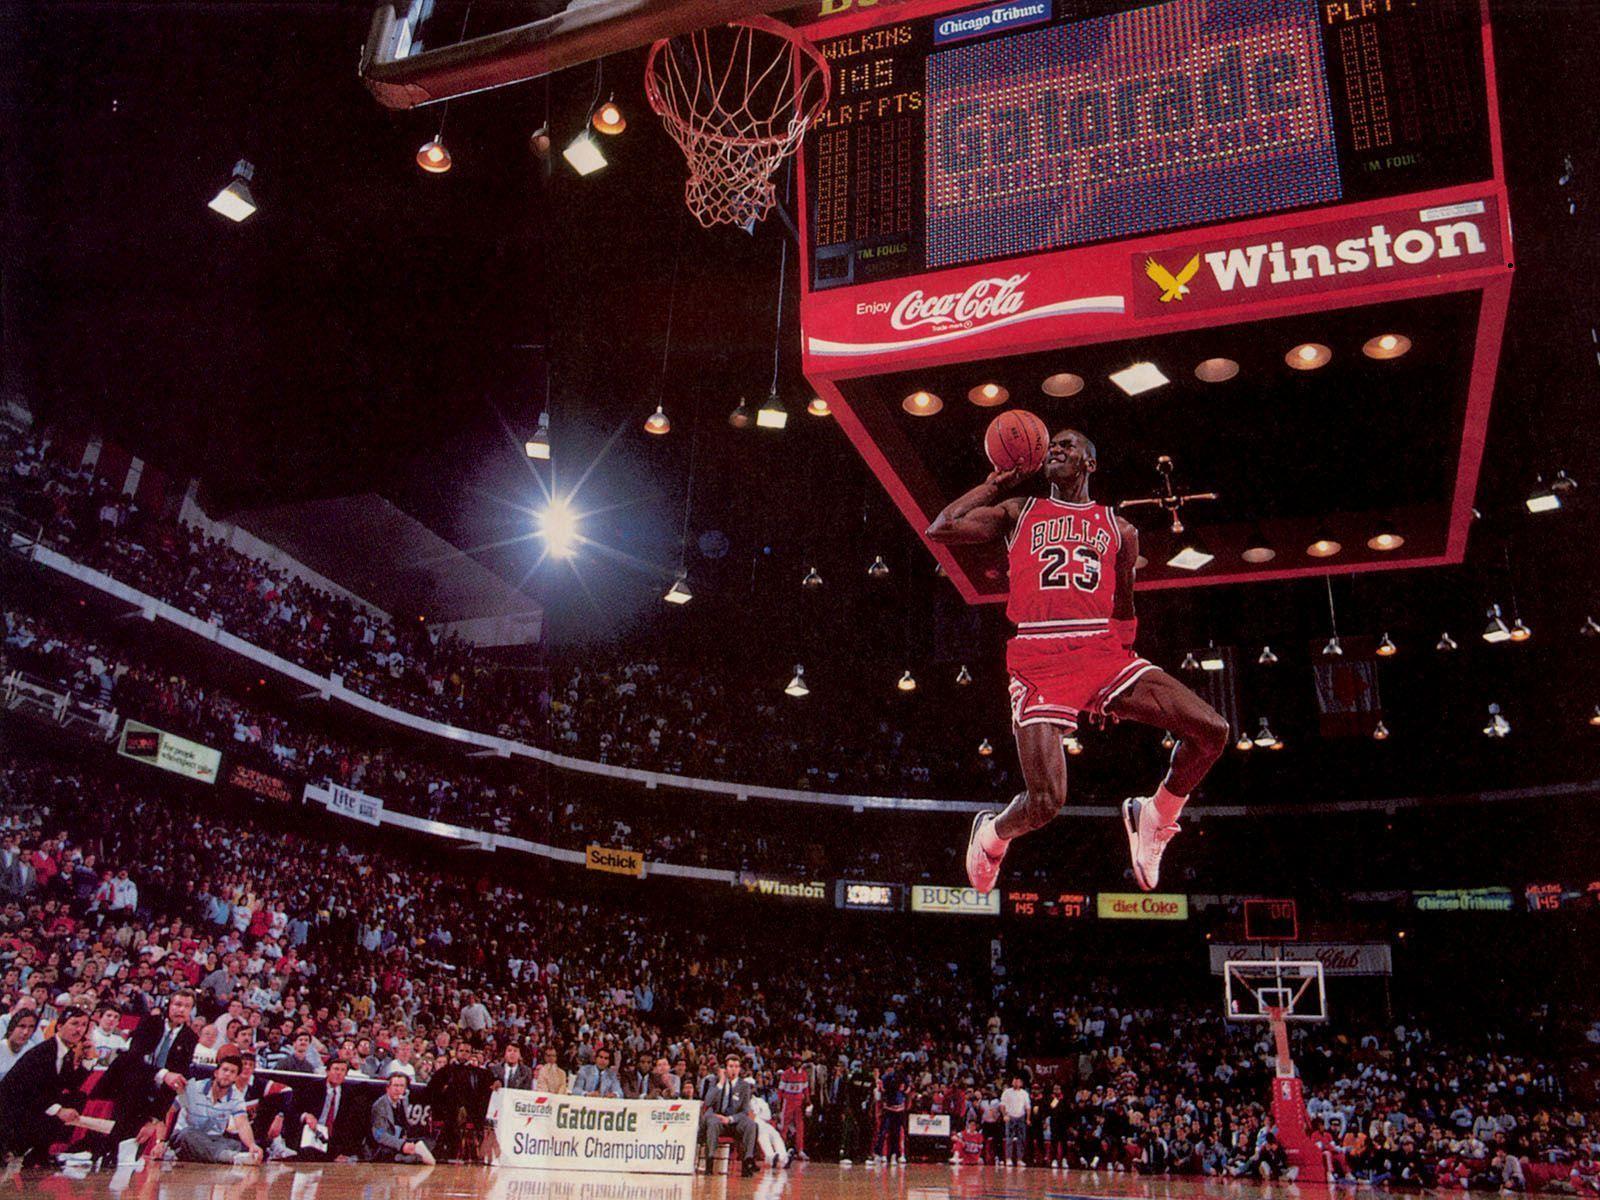 Michael Jordan HD Wallpapers - Wallpaper Cave